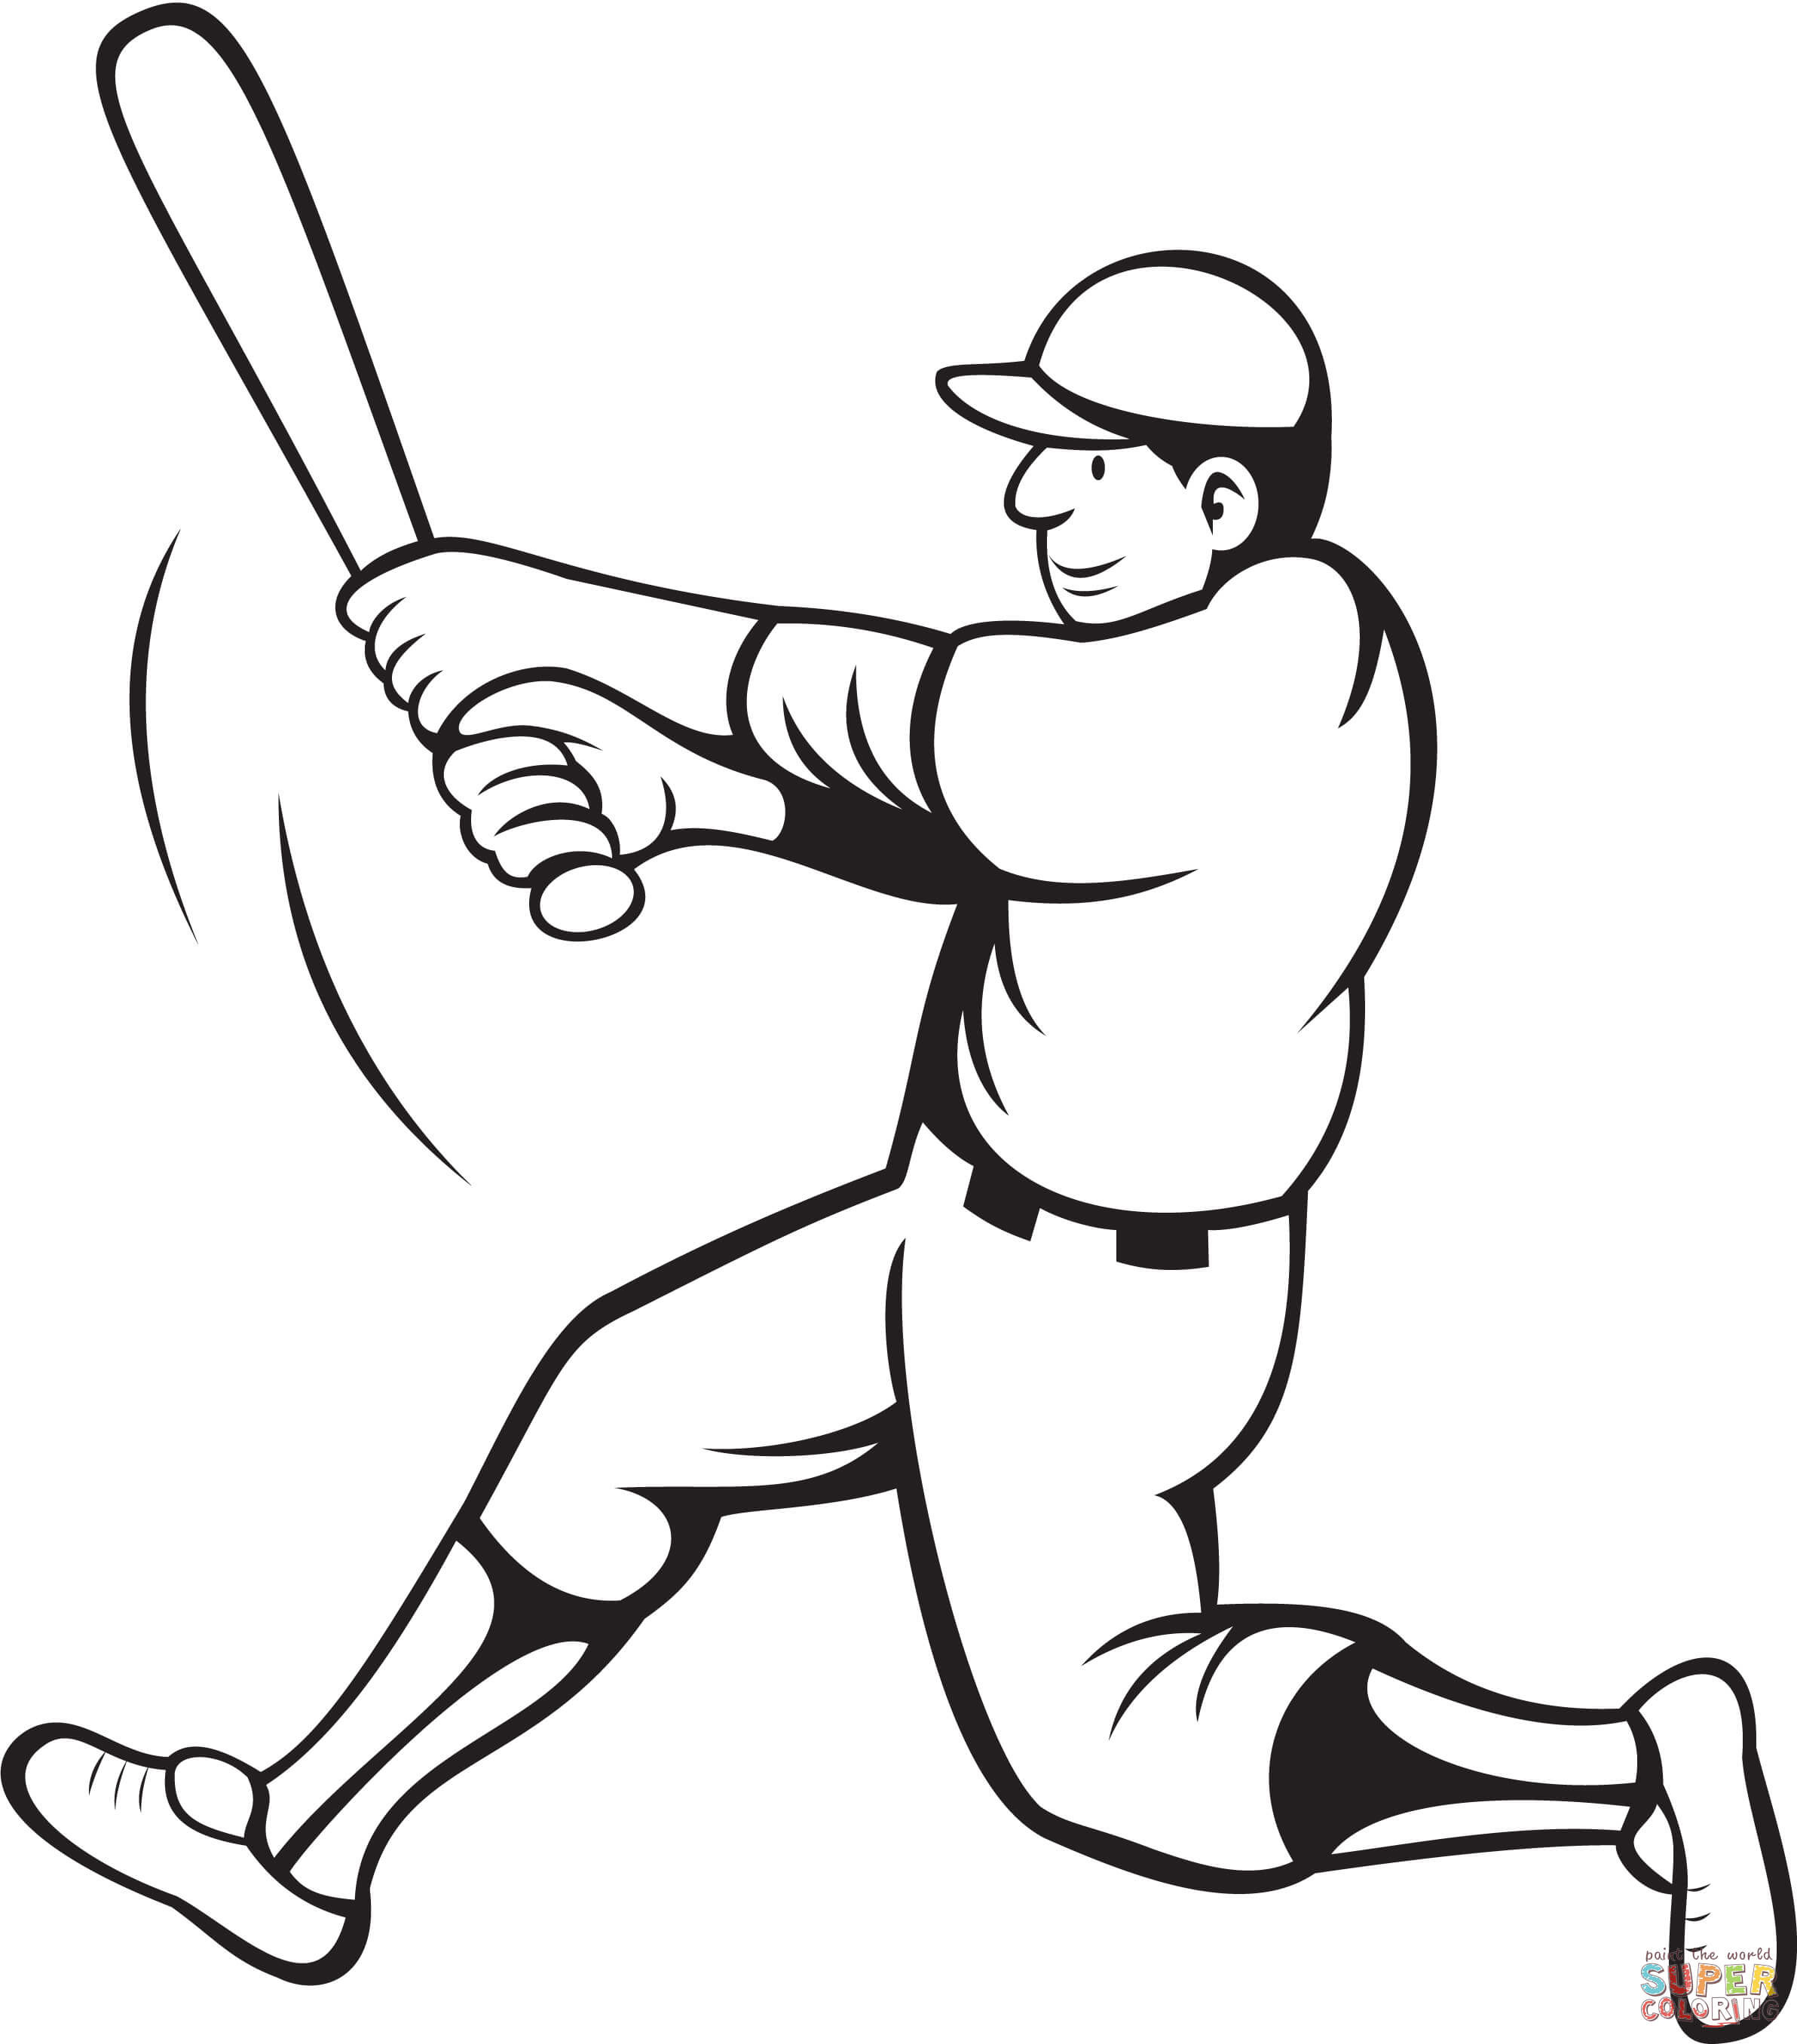 Printable Baseball Coloring Pages
 Baseball Batter Swinging coloring page